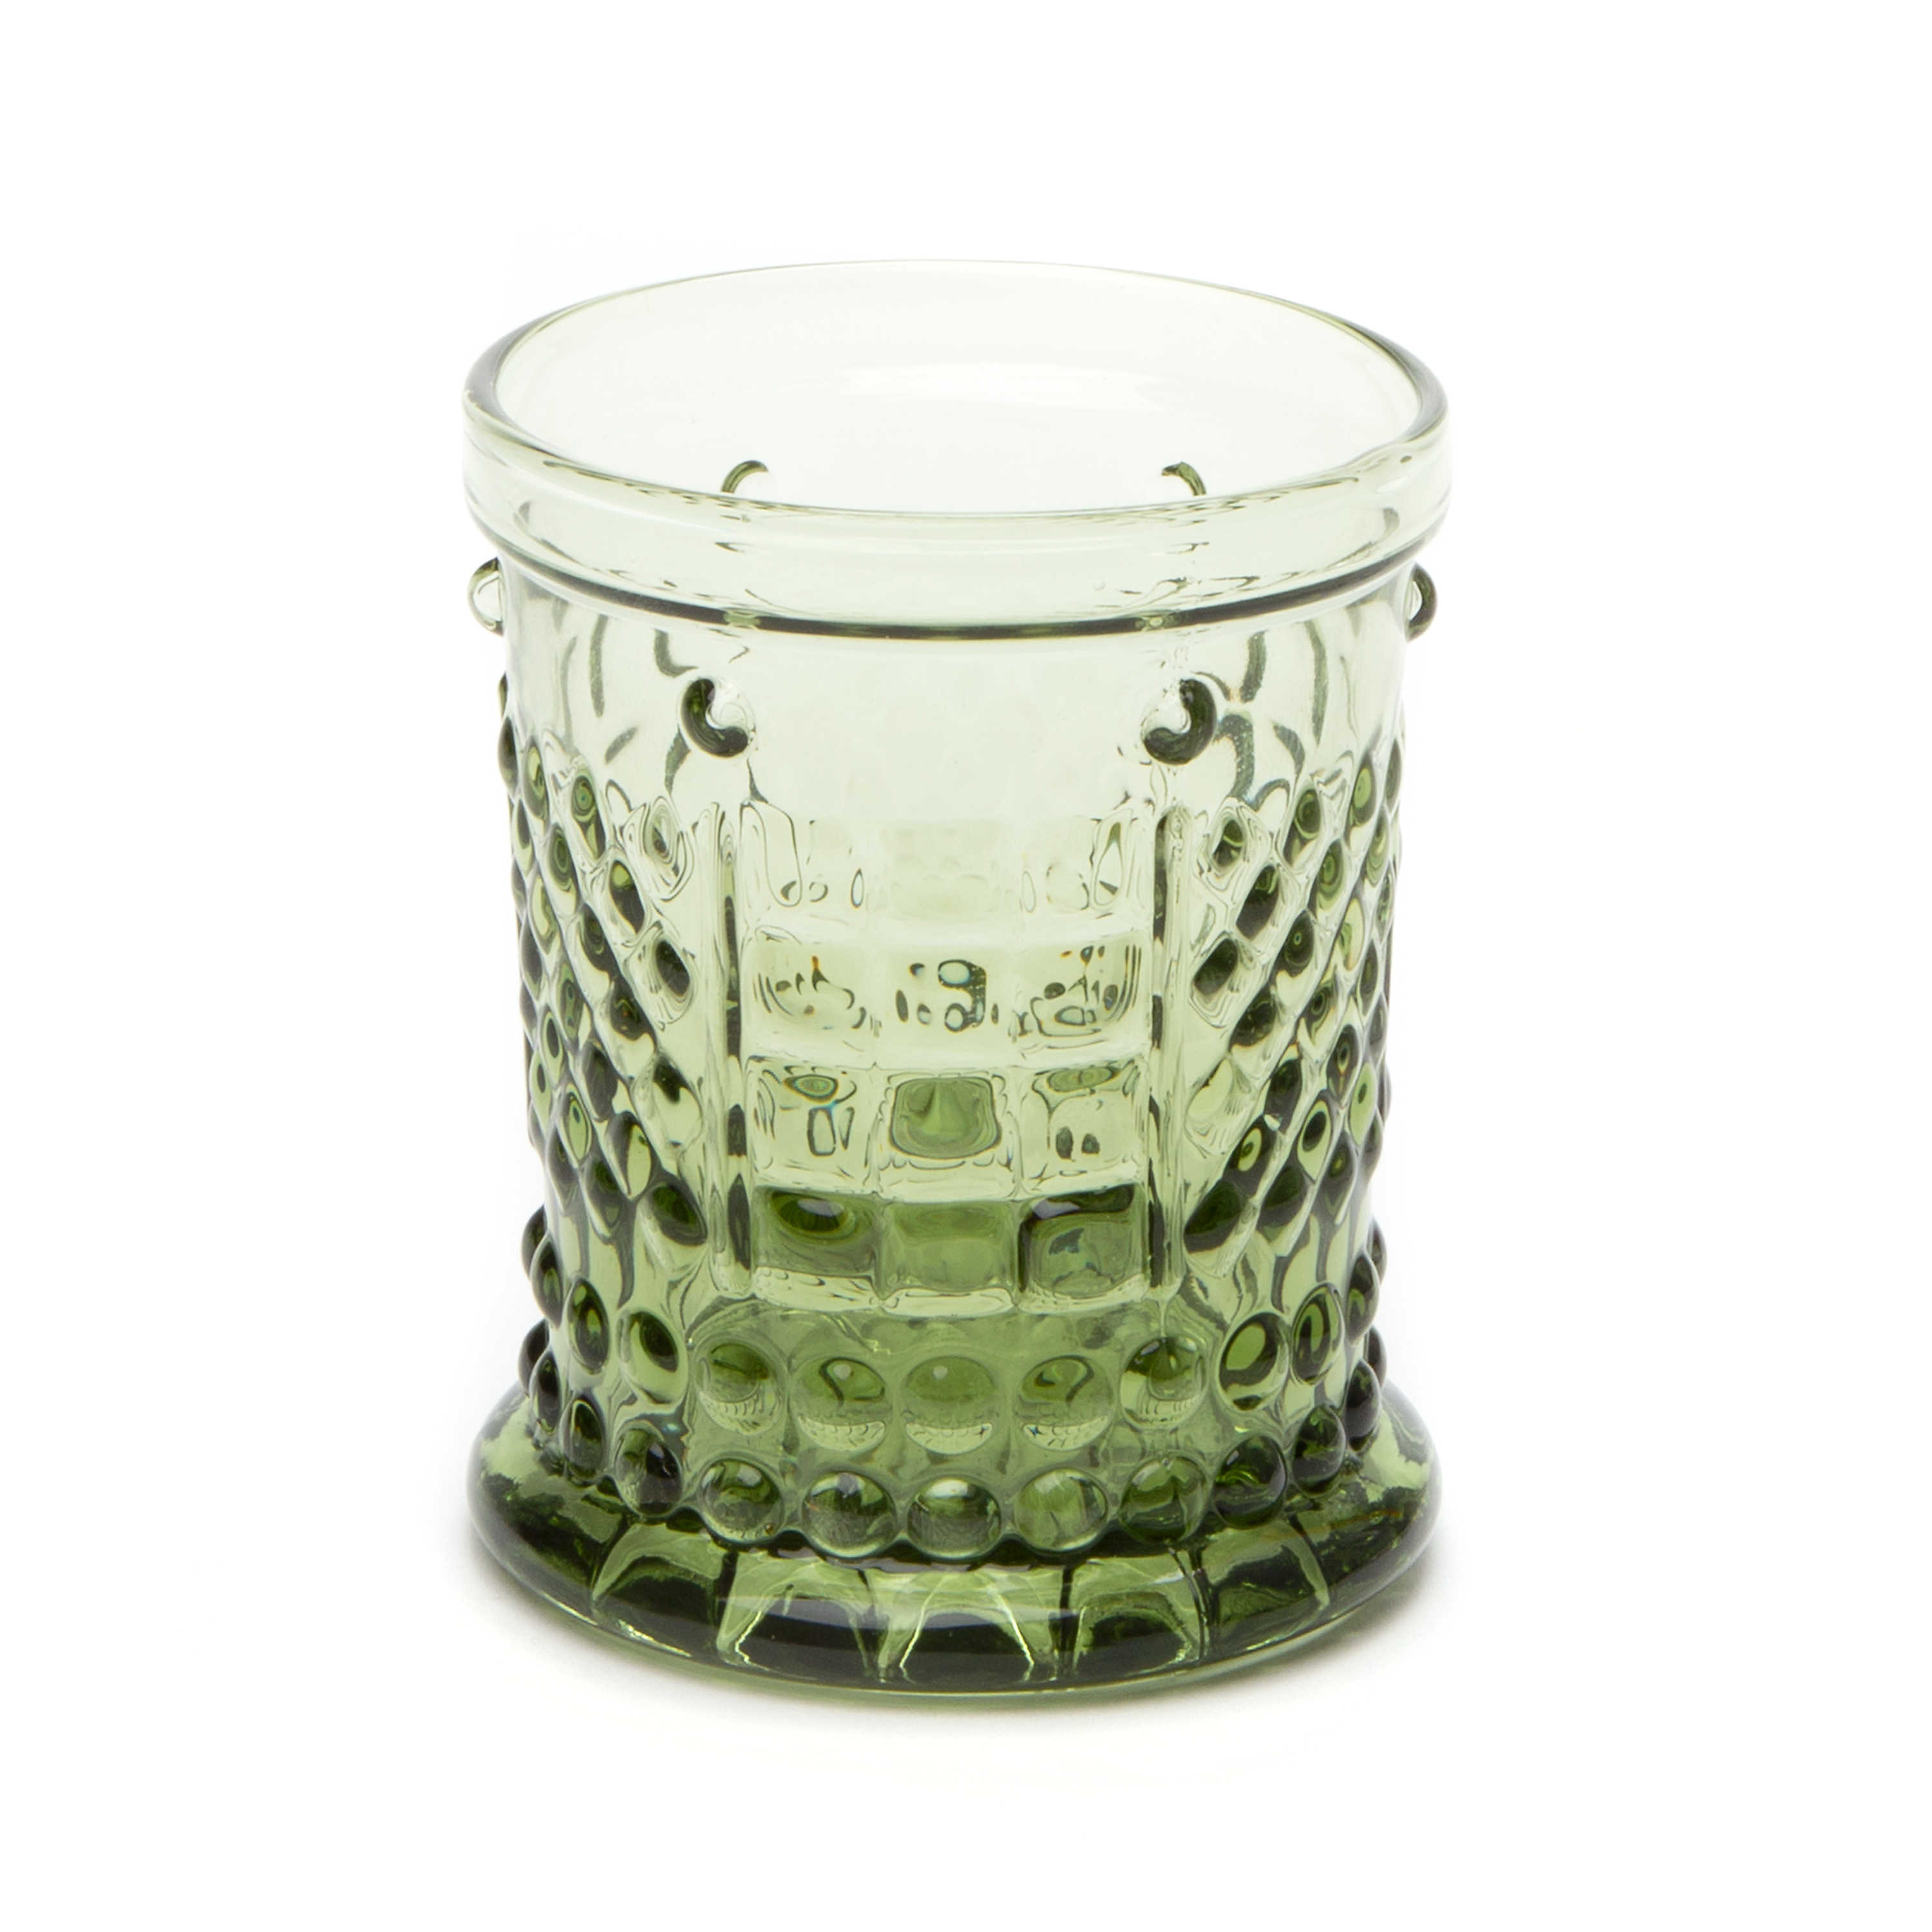 Coquette Juice Glass - Green mackenzie-childs Panama 0